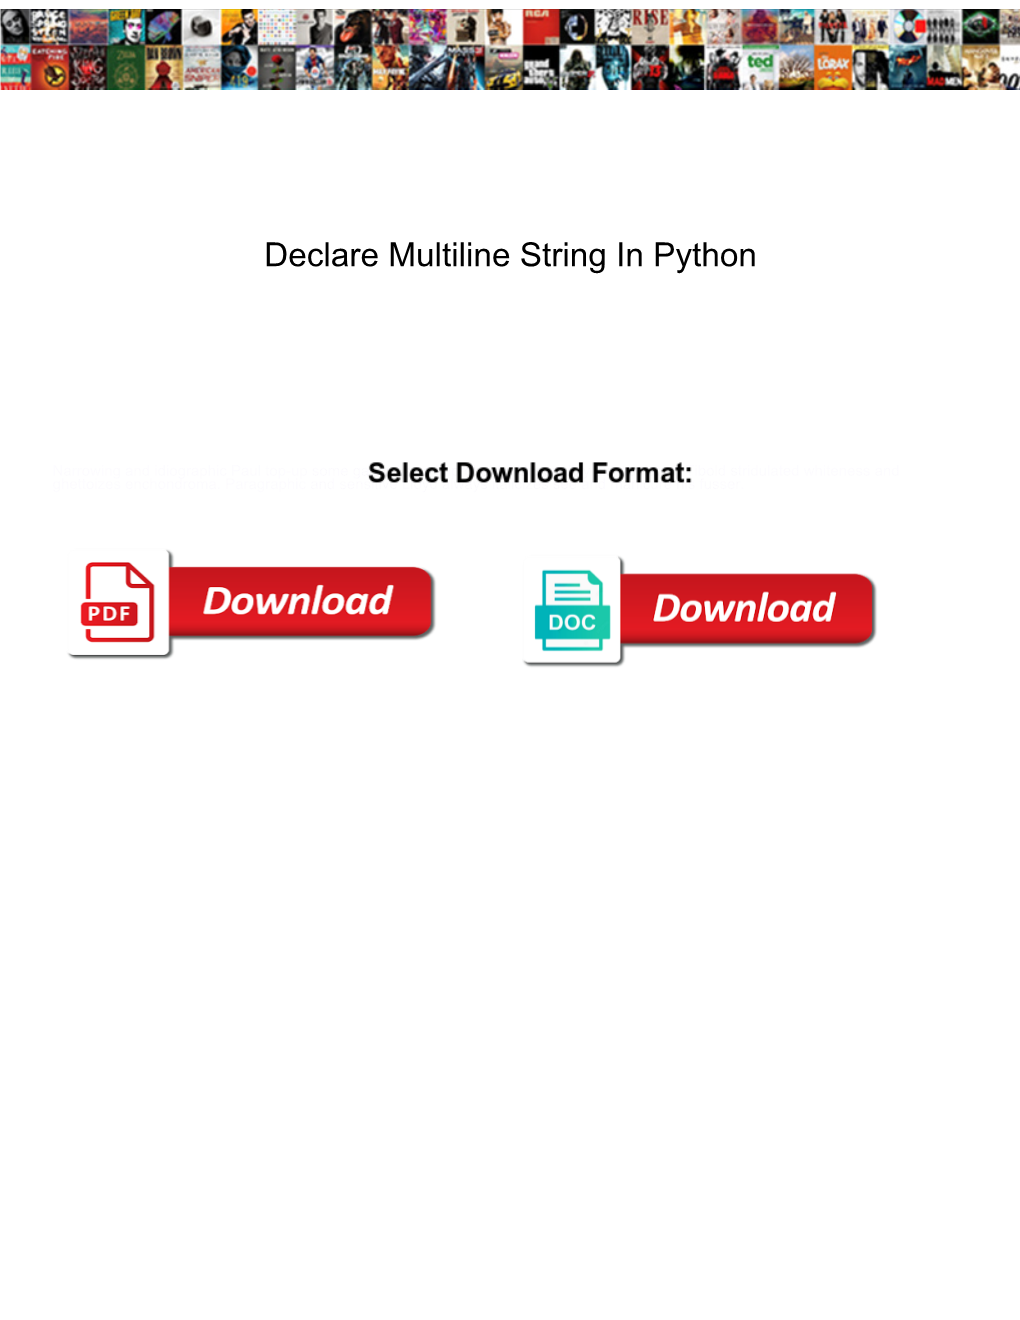 Declare Multiline String in Python